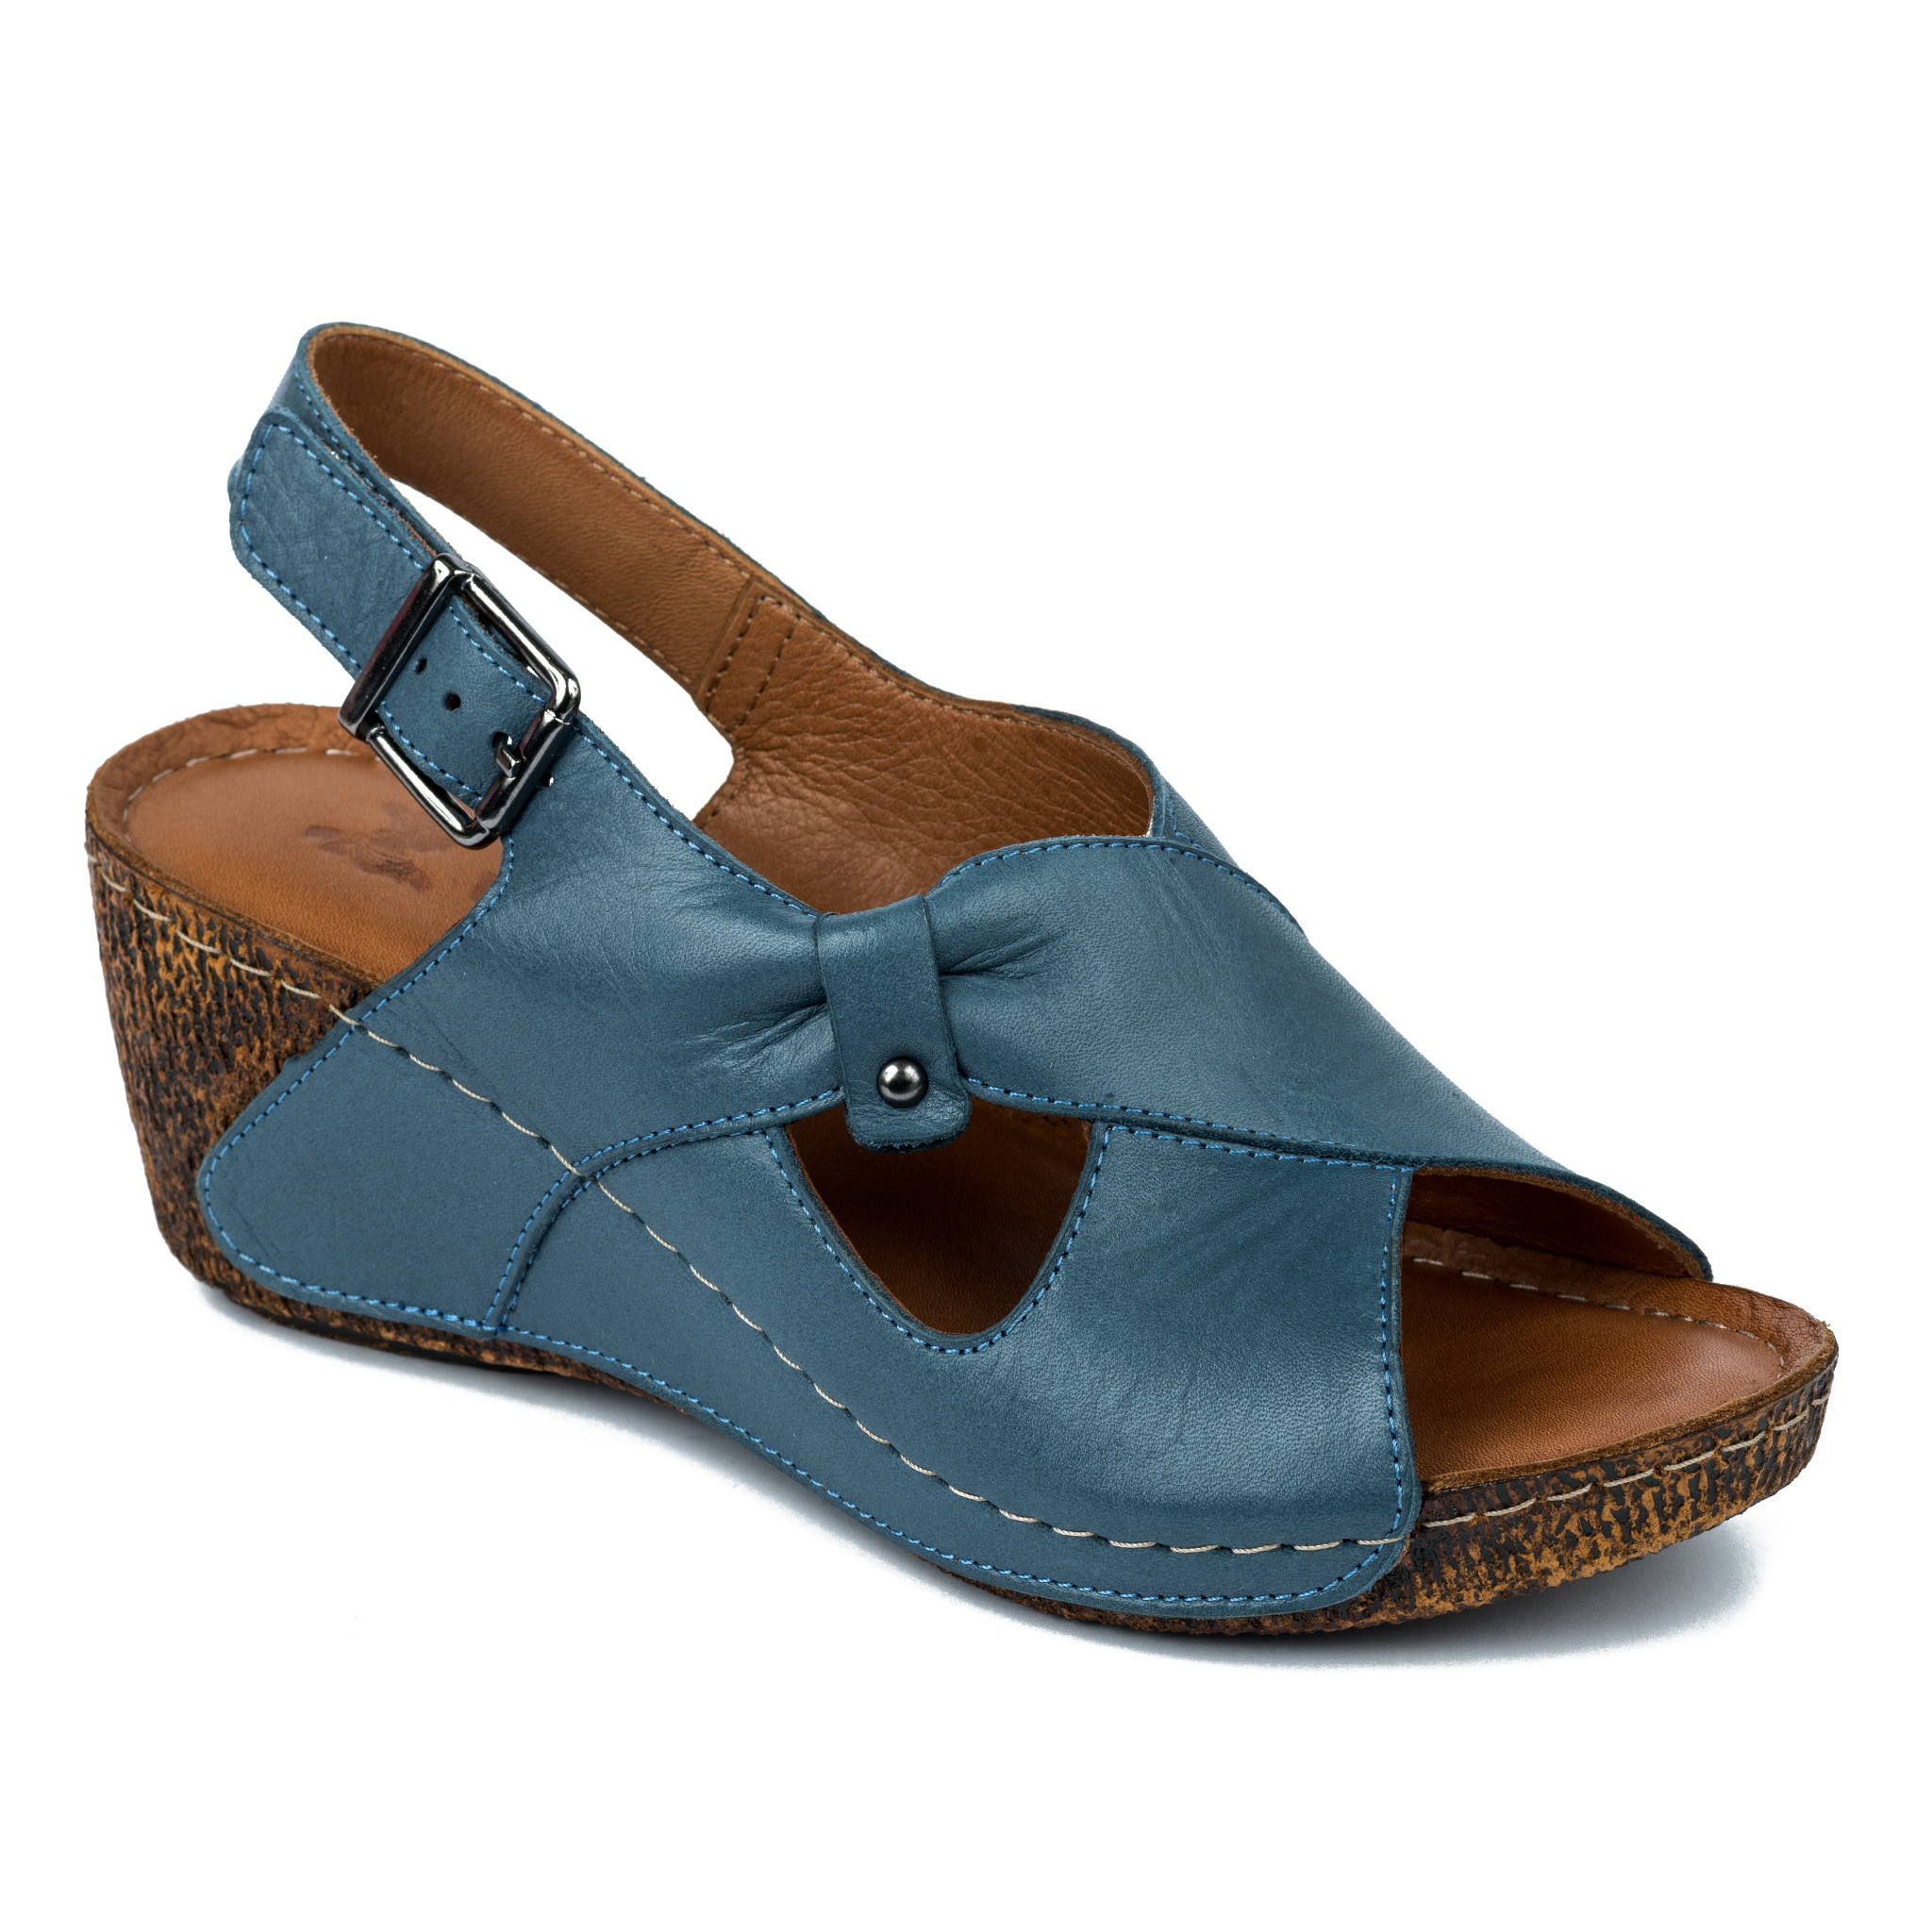 Women sandals A275 - BLUE